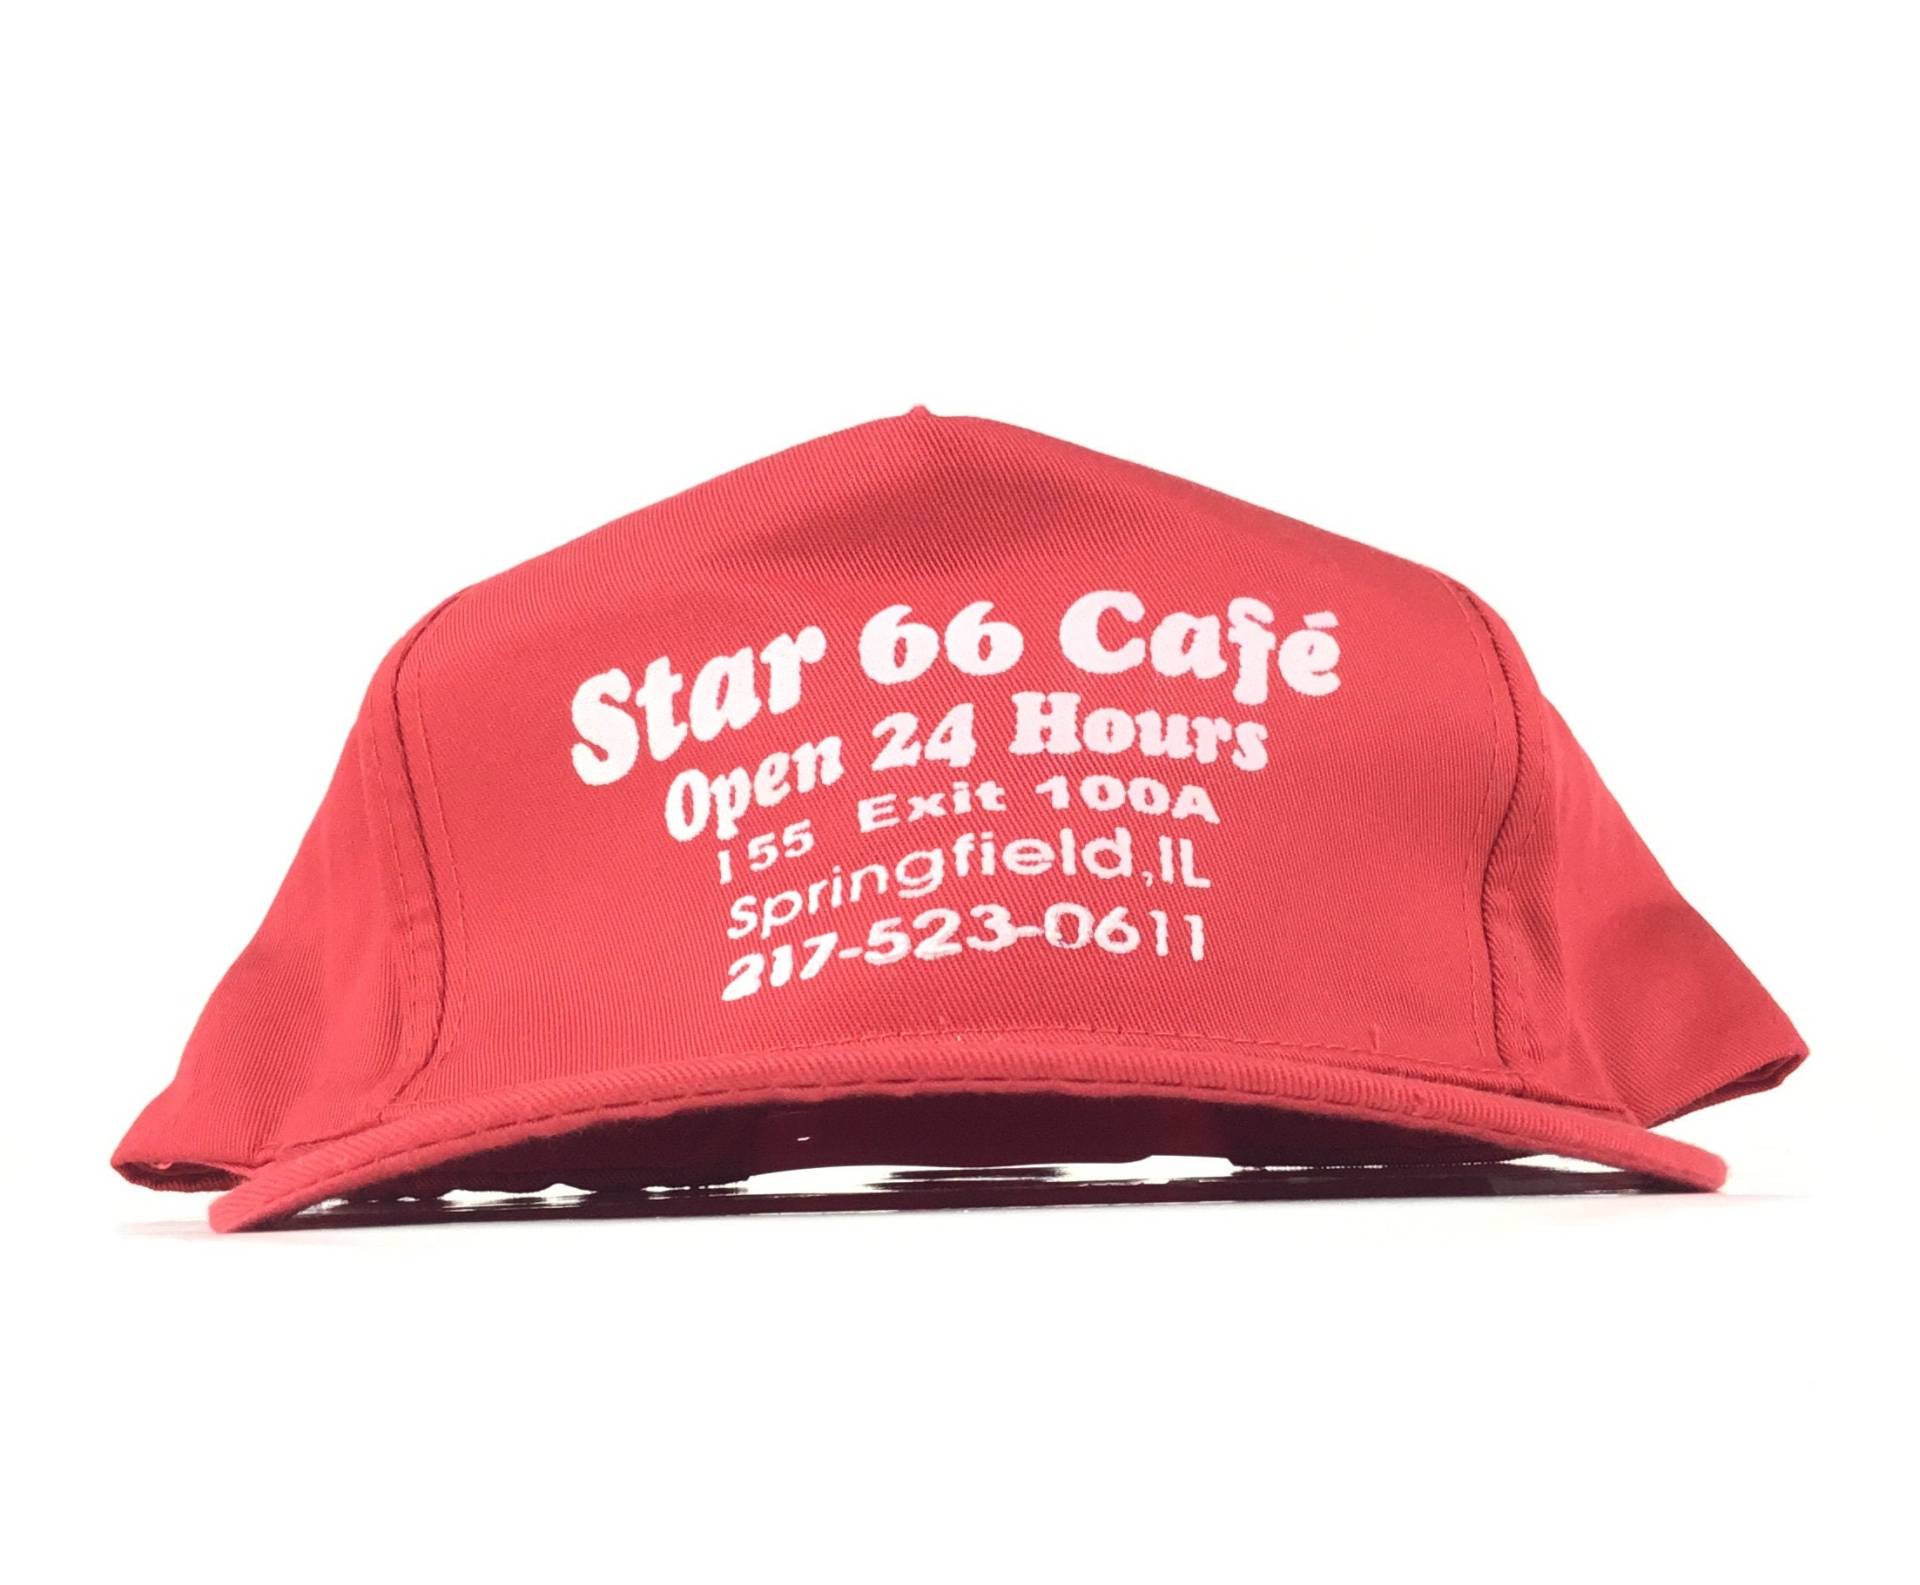 Vintage 1990S Star 66 Cafe Springfield Il Illinois 155 Exit 100A Open 24 Hours Red Baseball Cap Hat Adj. Herrengröße Baumwolle von arm90210